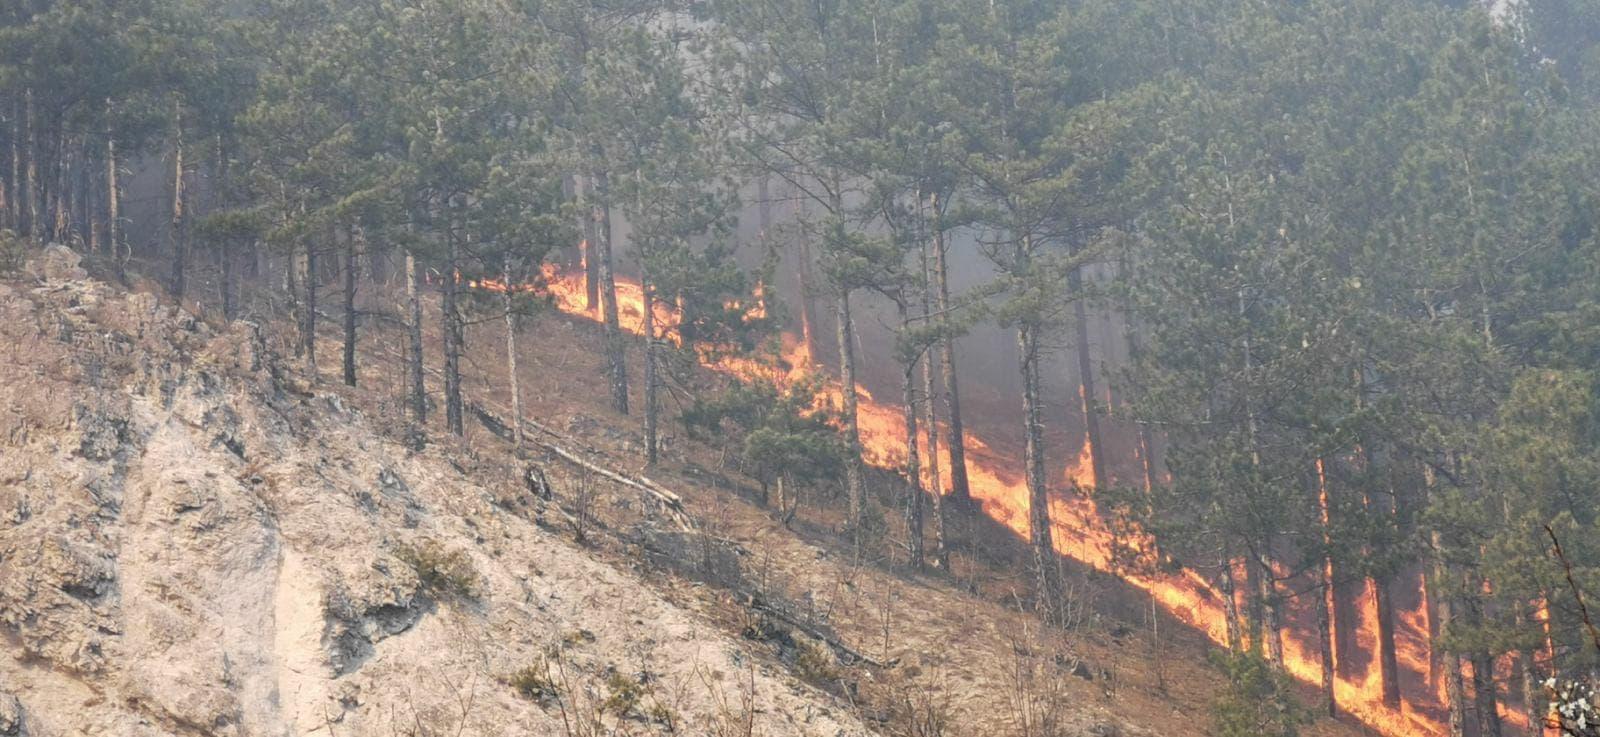 Nekontroliranim paljenjem korovskog otpada mogućnost nastanka šumskog požara je povećana - Avaz